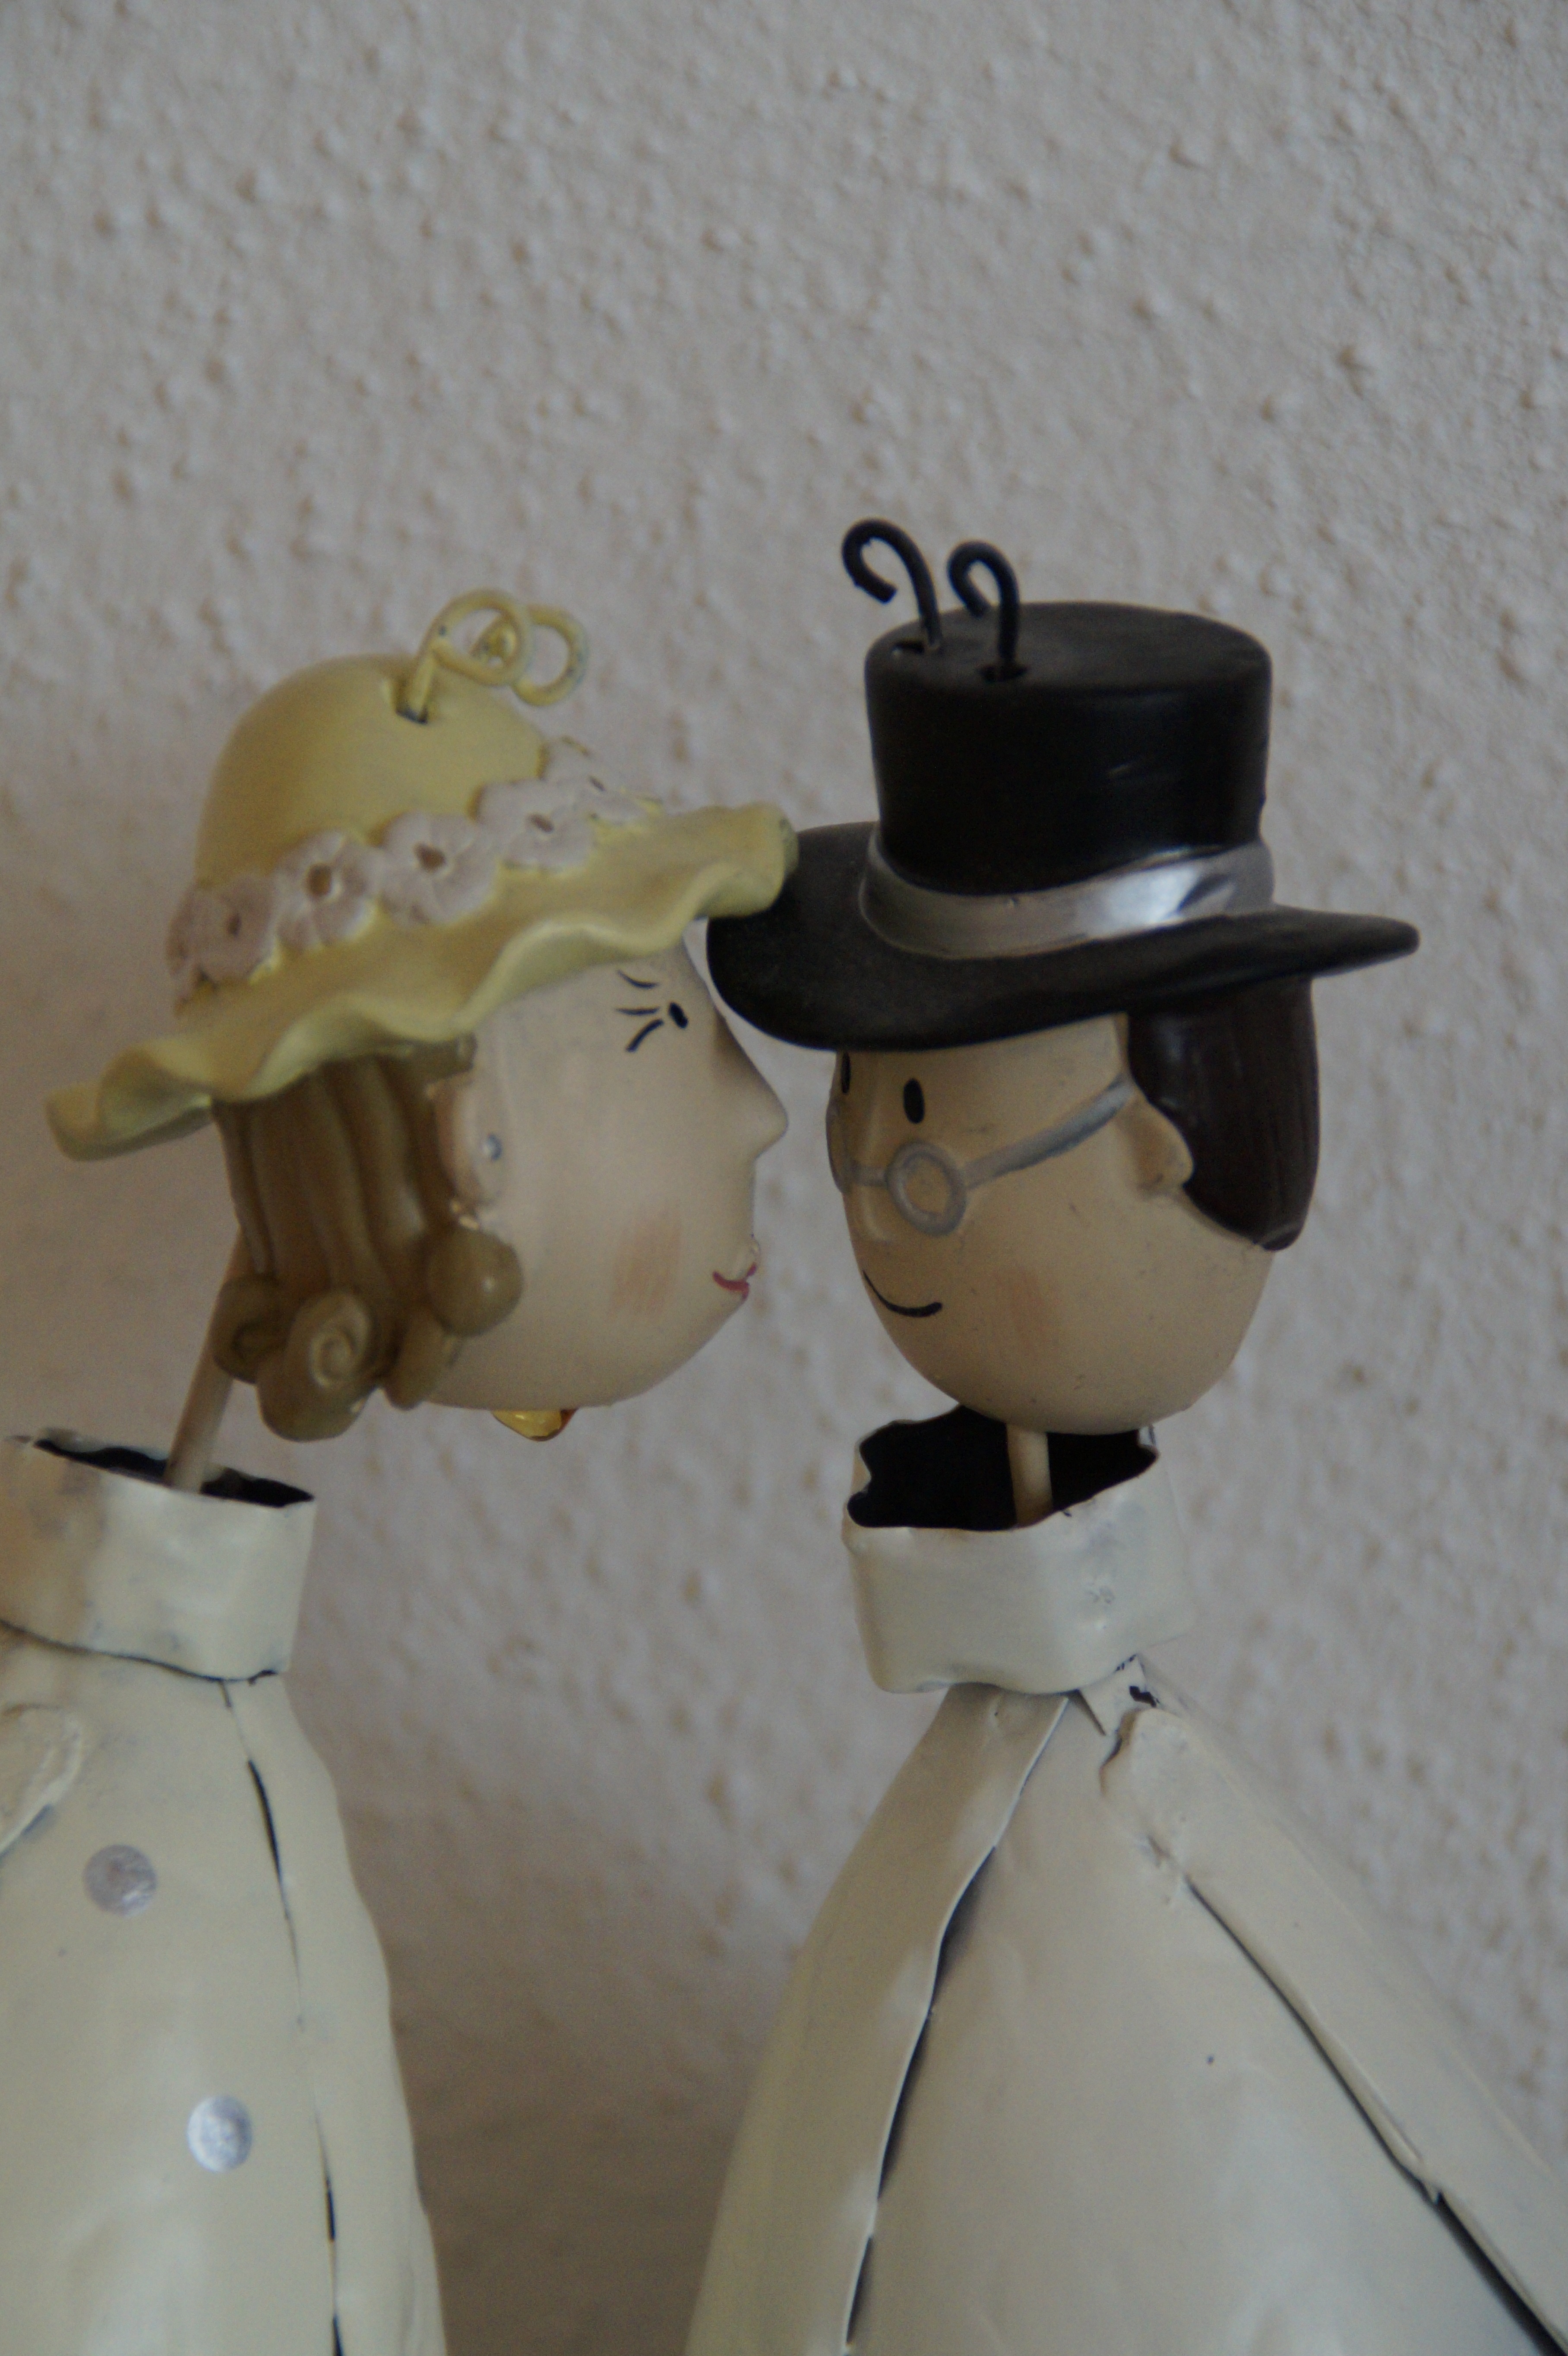 couple figurine